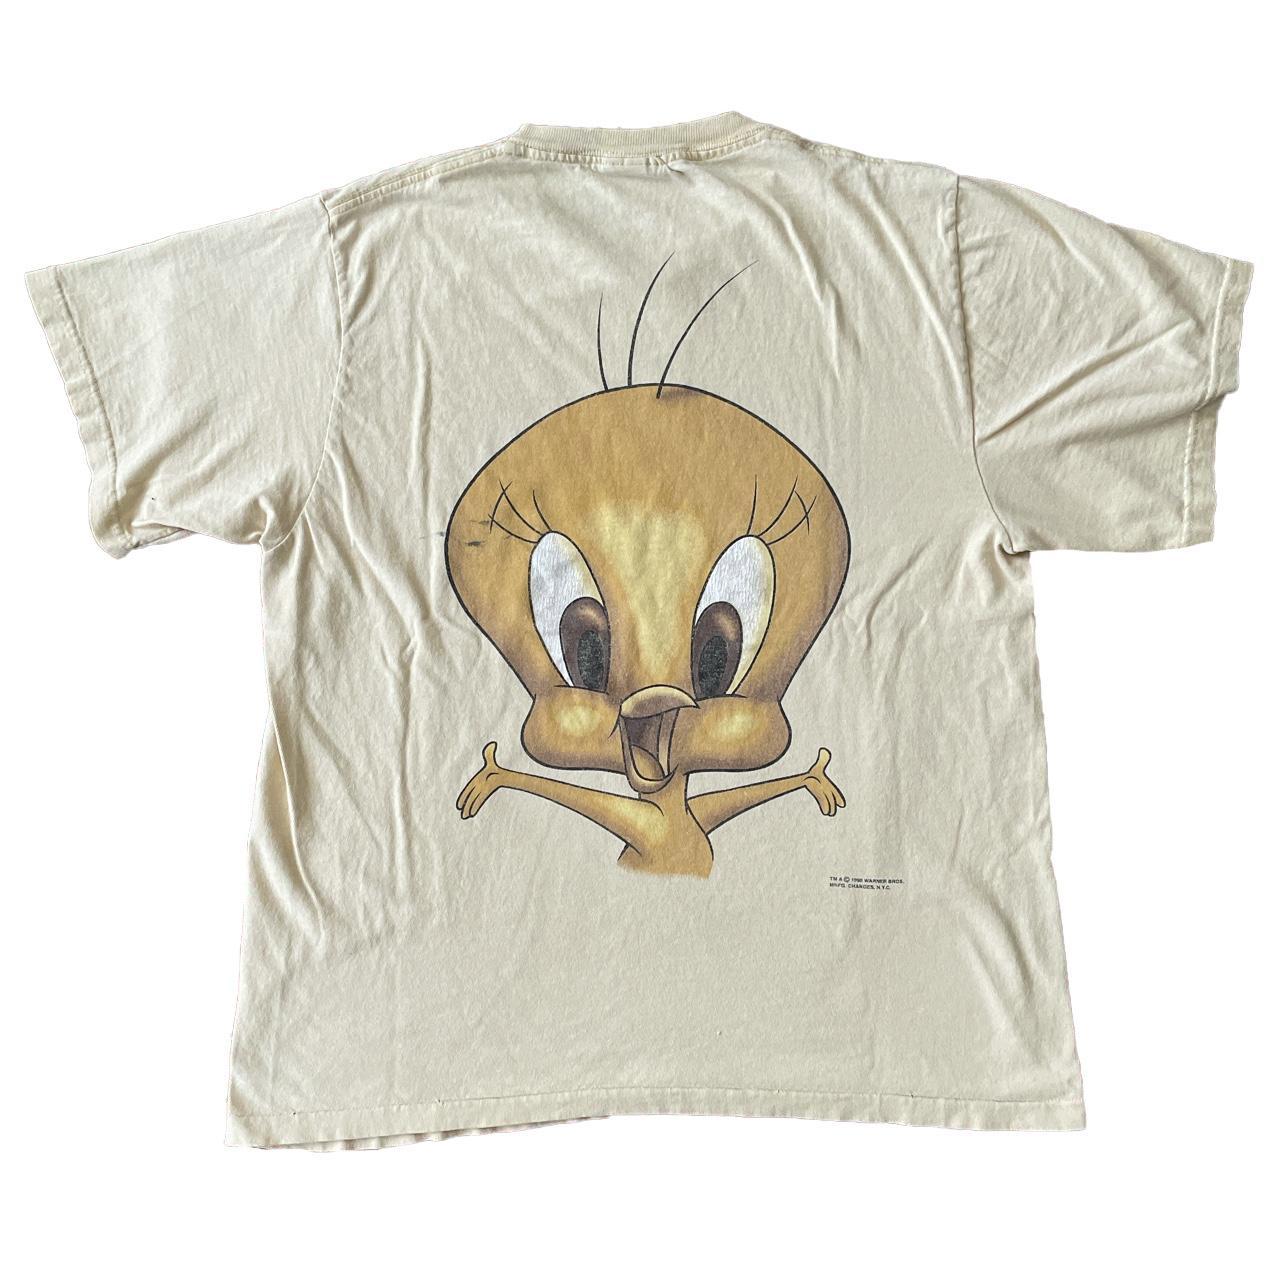 L... 1995 Wear - size Depop vintage t-shirt Tweety